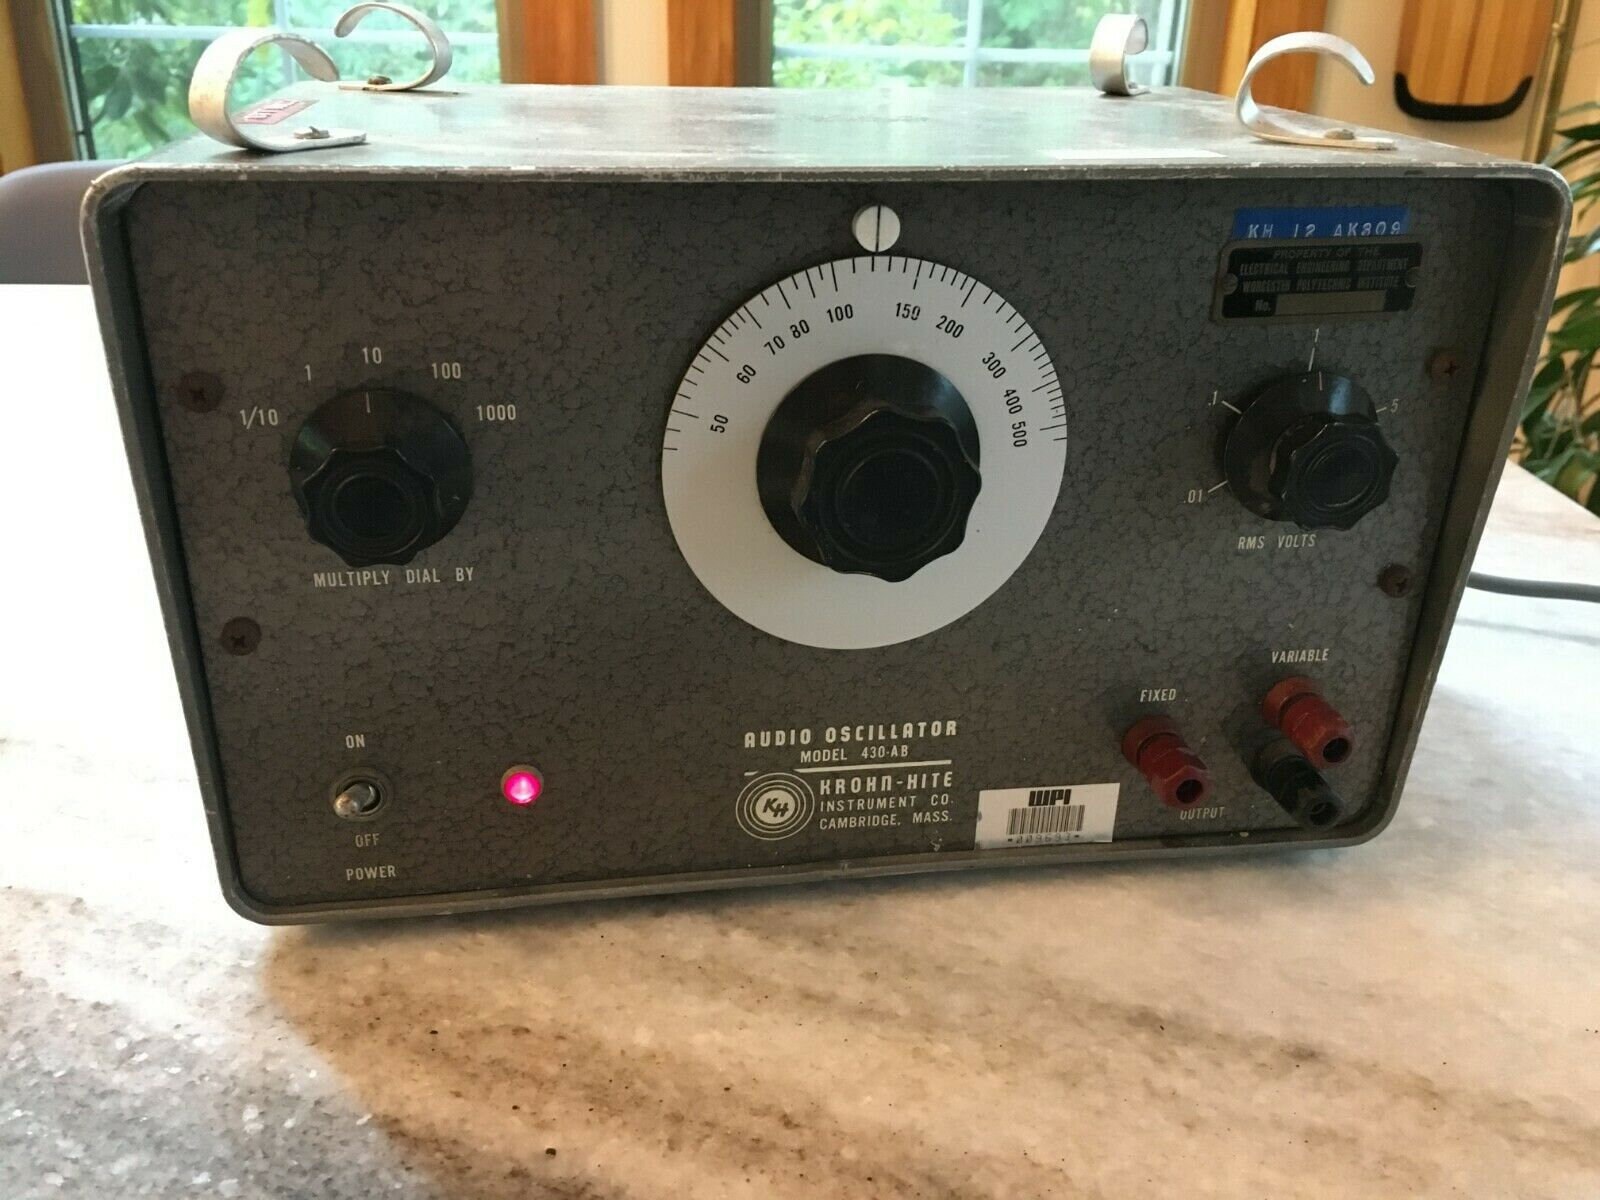 Vintage Krohn-hite KH 430-AB Vacuum Tube Audio Oscillator